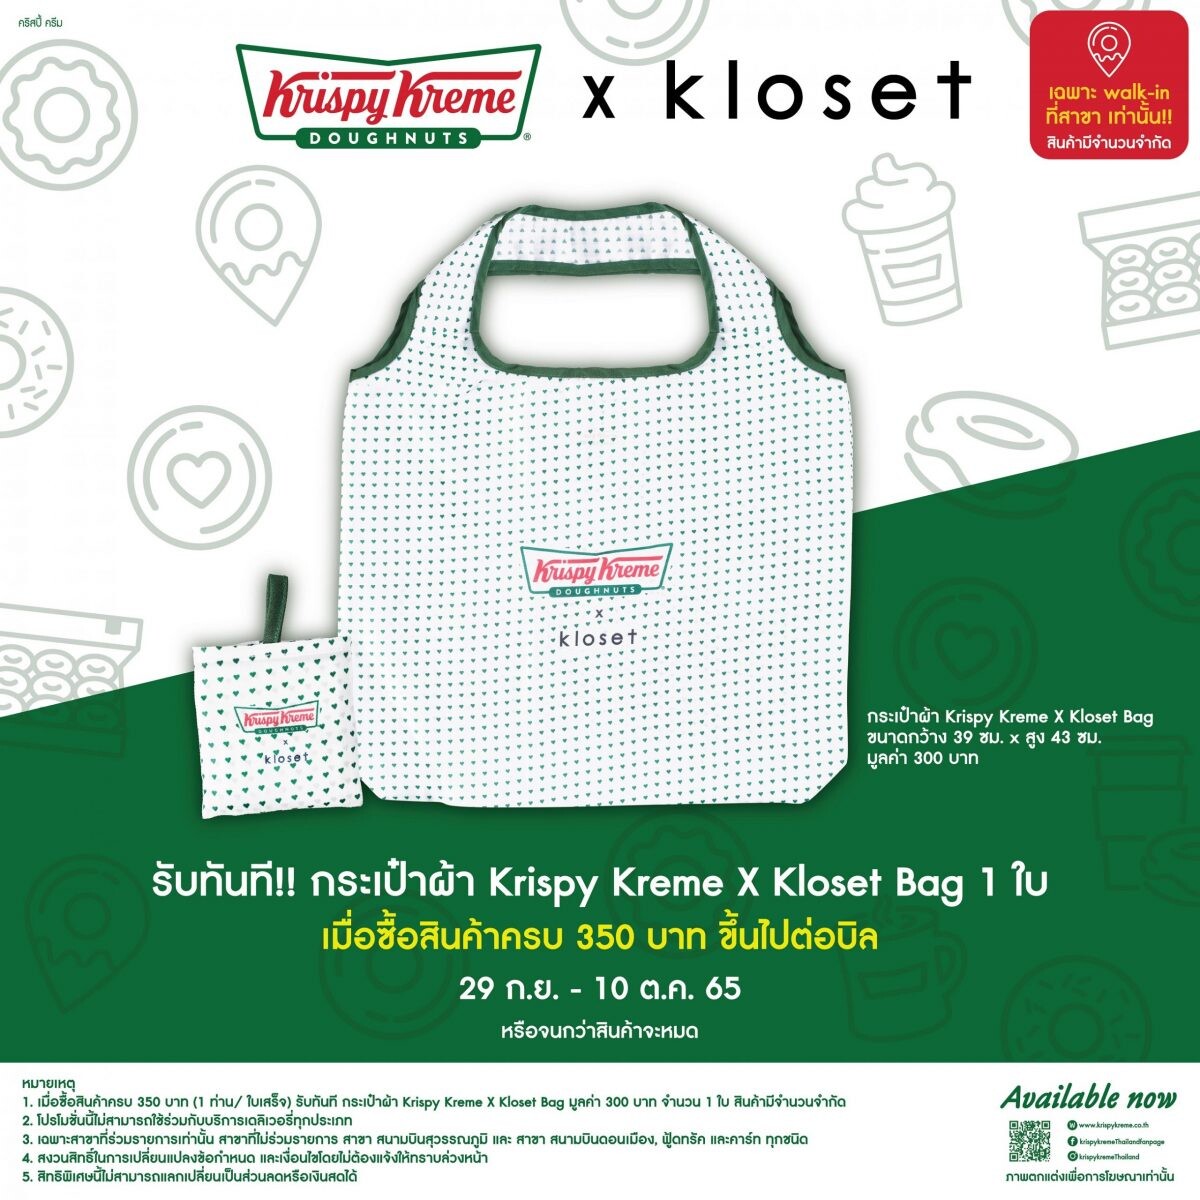 ของมันต้องมี!! "Krispy Kreme x Kloset Bag" กระเป๋าสุดฮอตกับการคอลแลปส์ครั้งยิ่งใหญ่ของสองแบรนด์ดัง